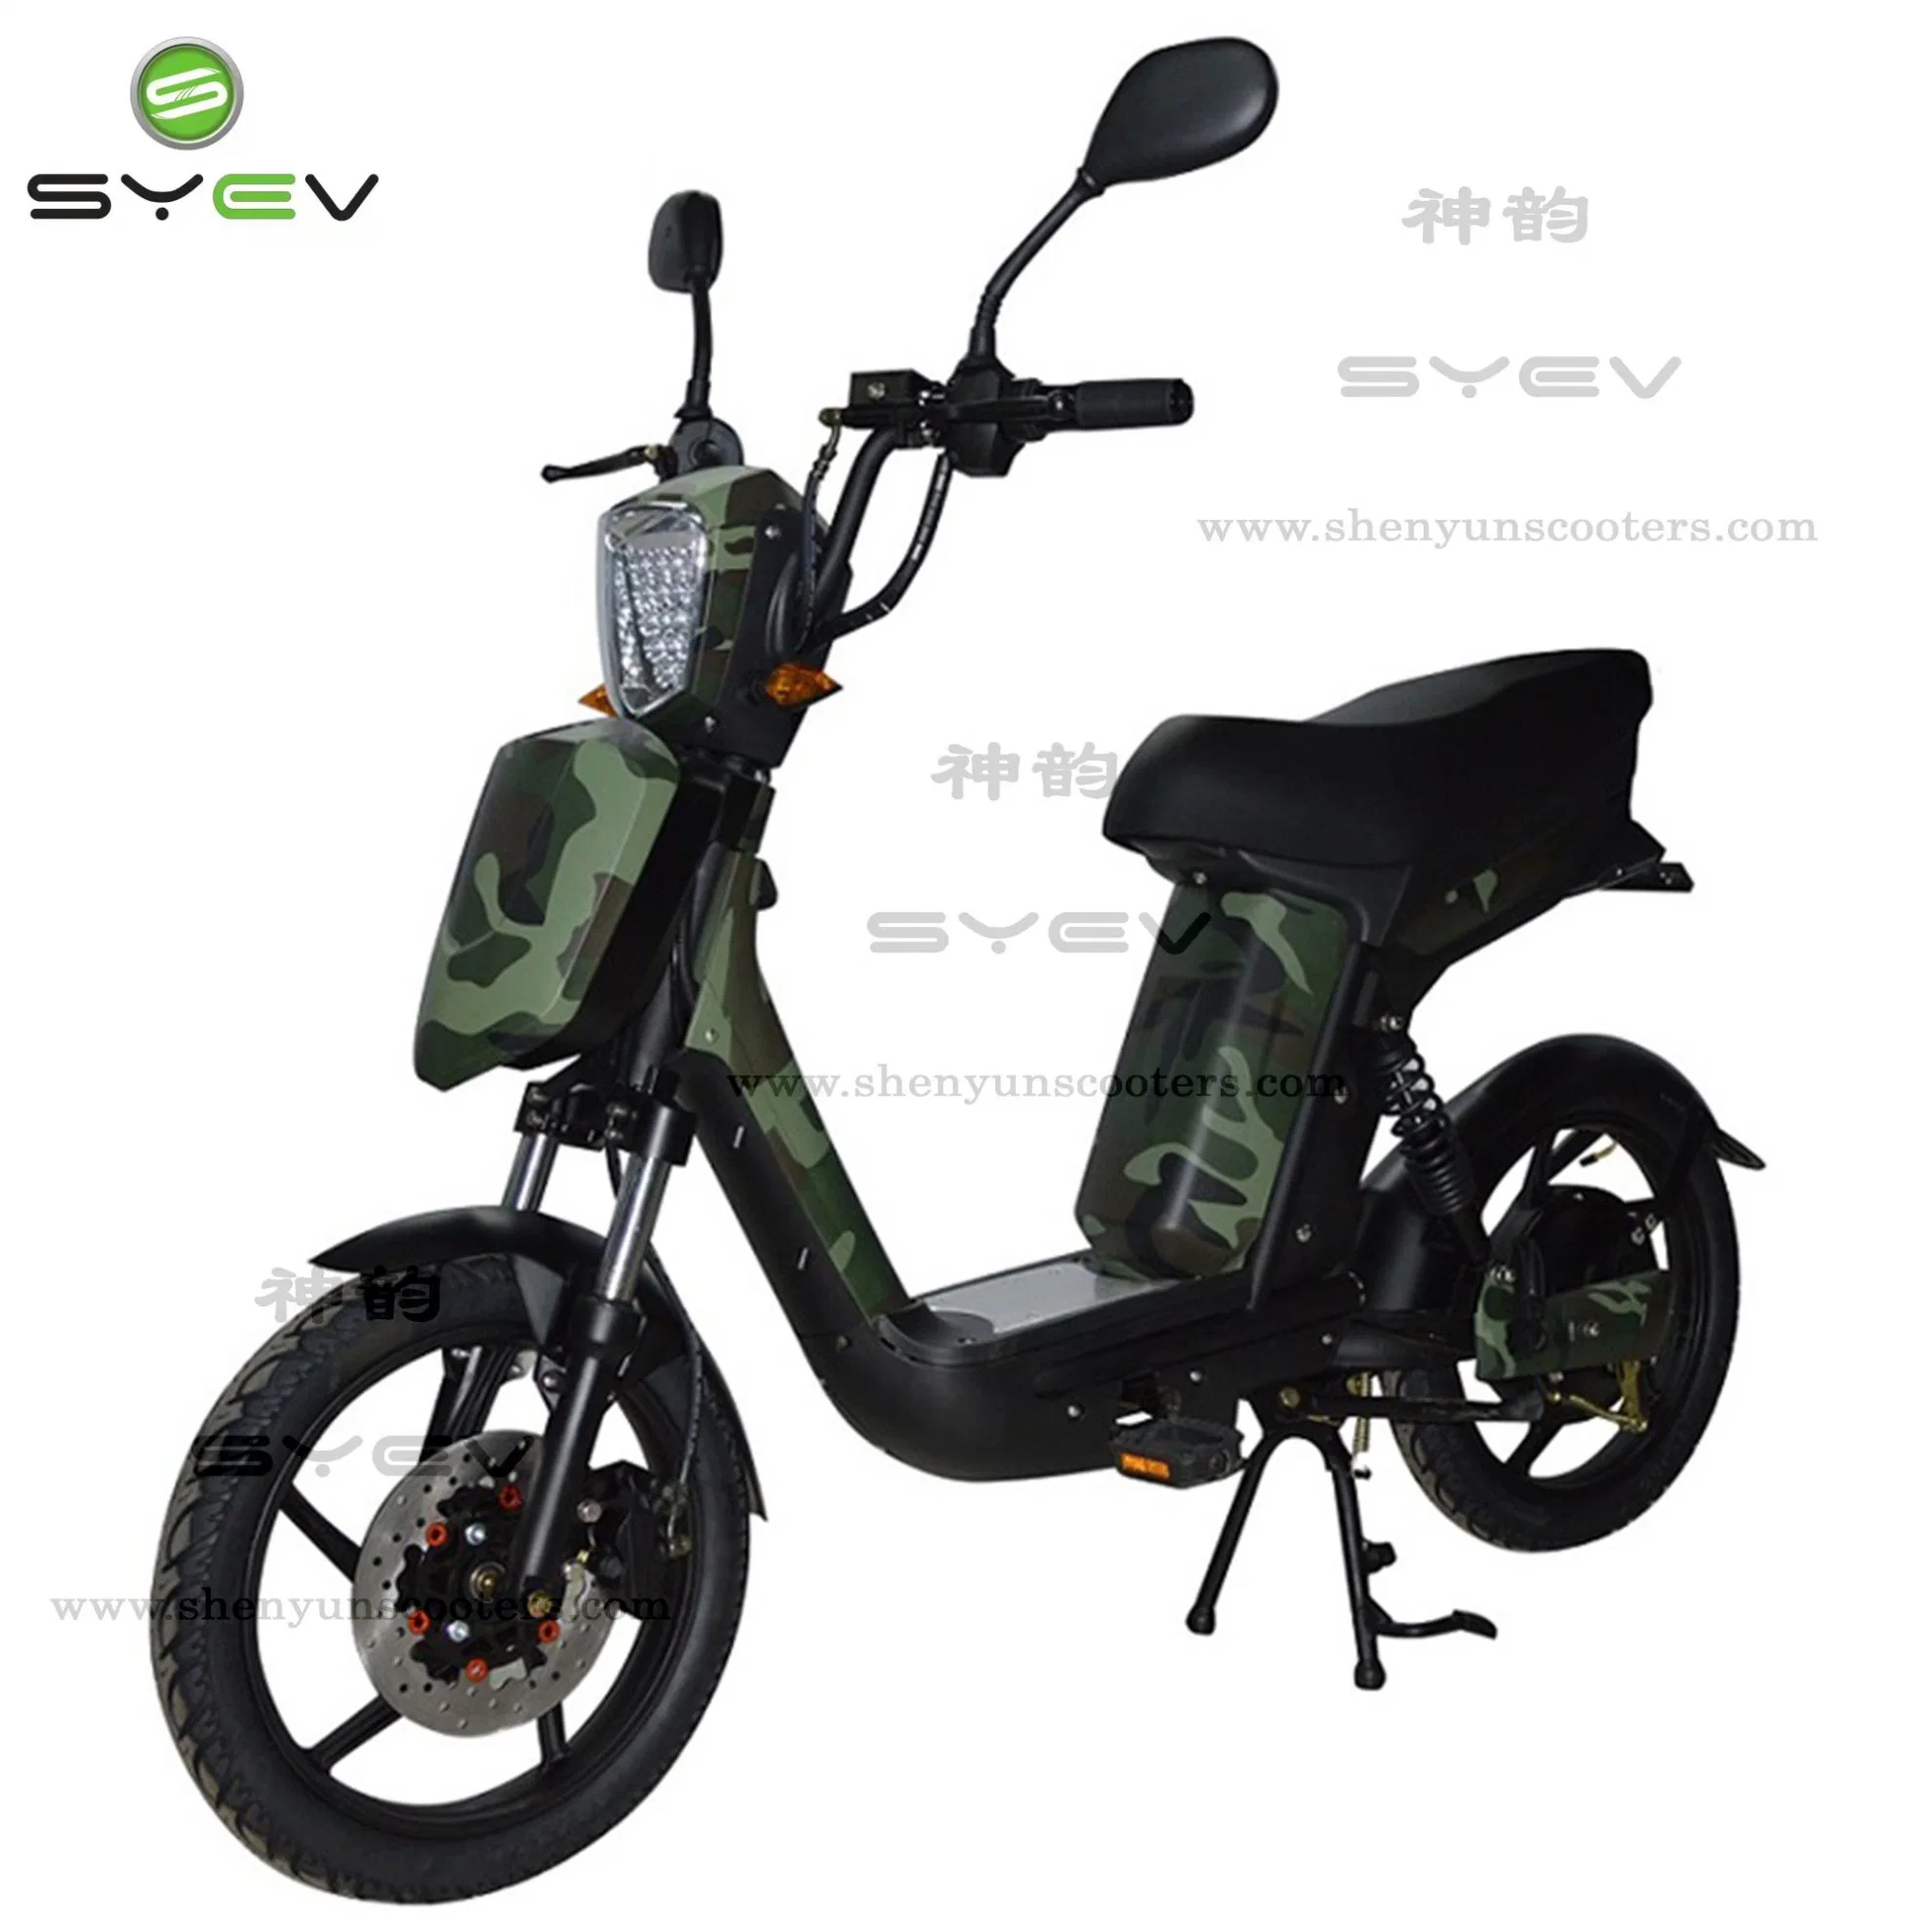 Syev Precio barato buena calidad 500W/800W BLDC Motor eléctrico chino Motocicleta Scooter Bike con frenos de disco/tambor